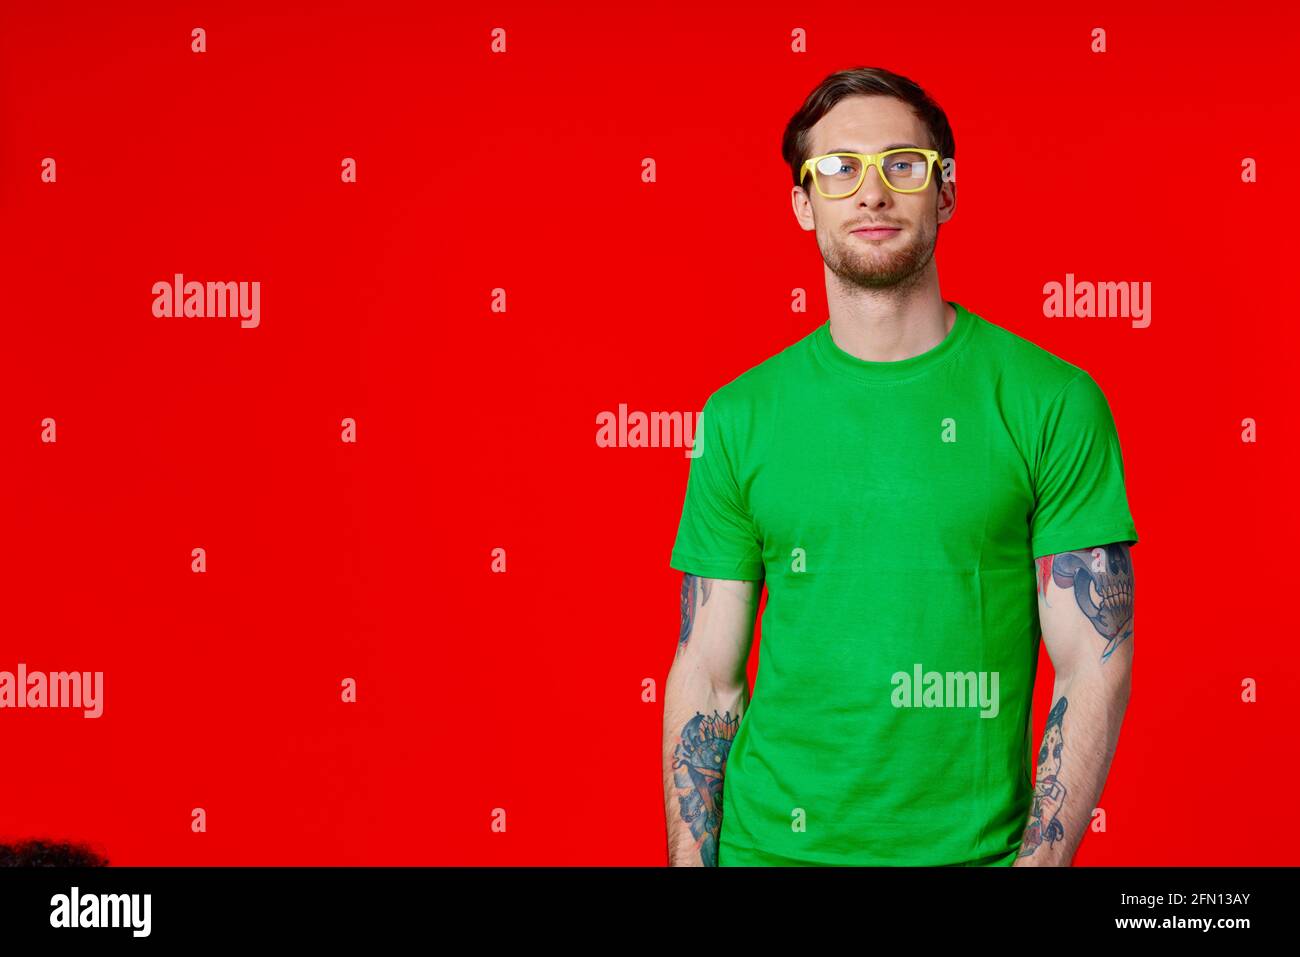 un homme dans un t-shirt vert avec des tatouages dans son mains portant des lunettes sur fond rouge Banque D'Images